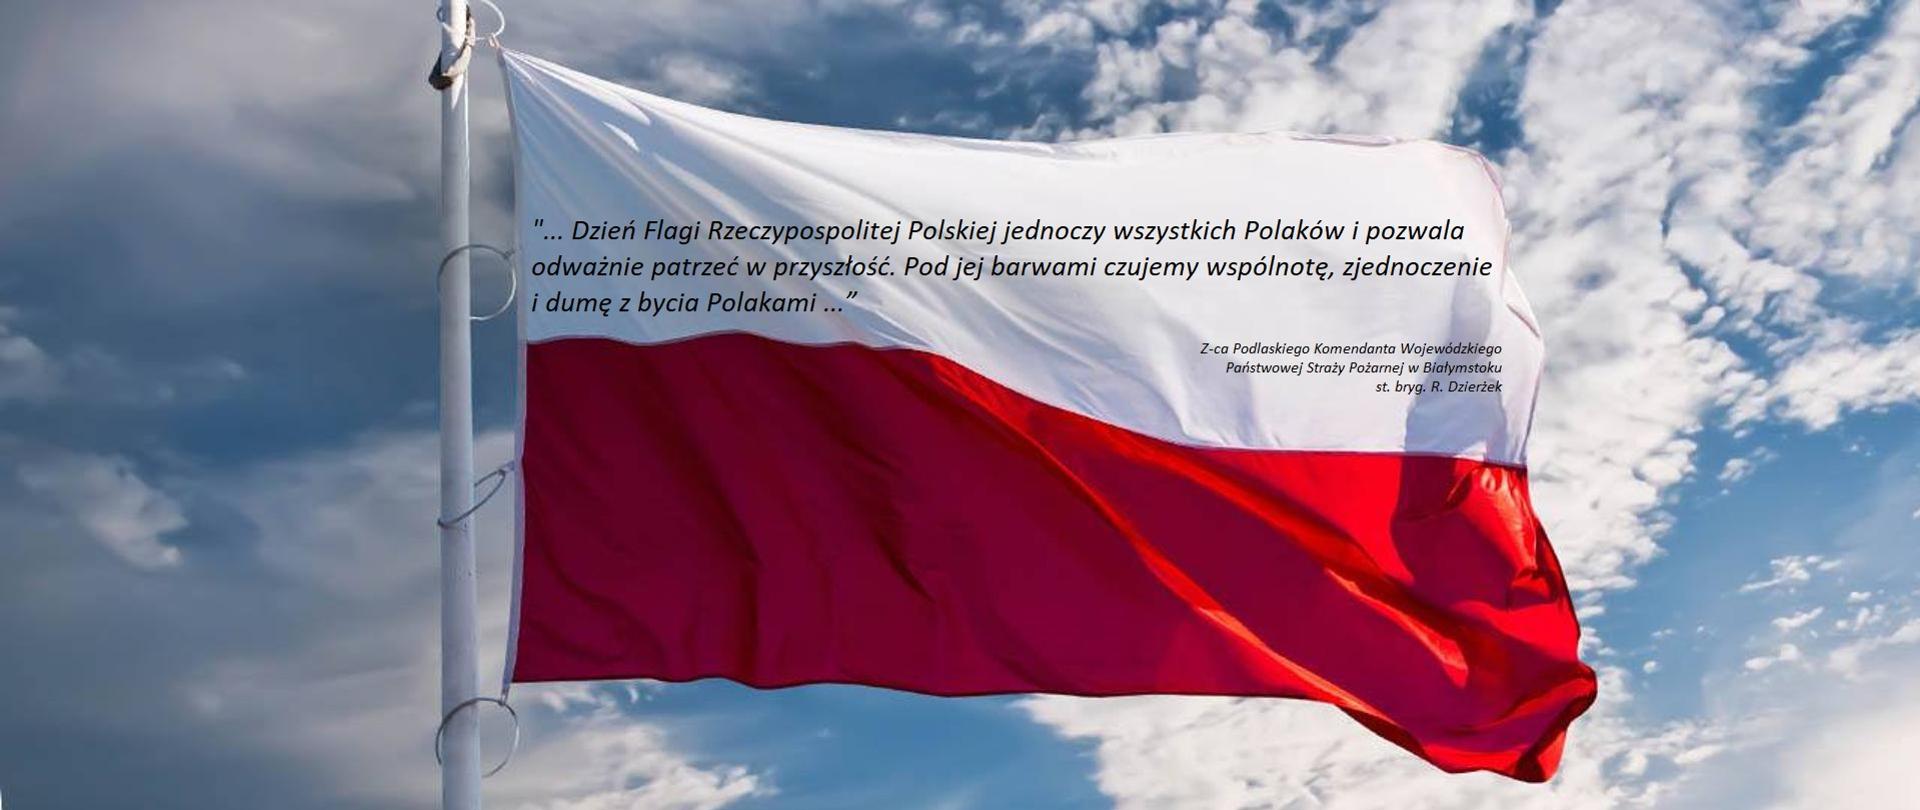 Dzień flagi rzeczypospolitej polskiej